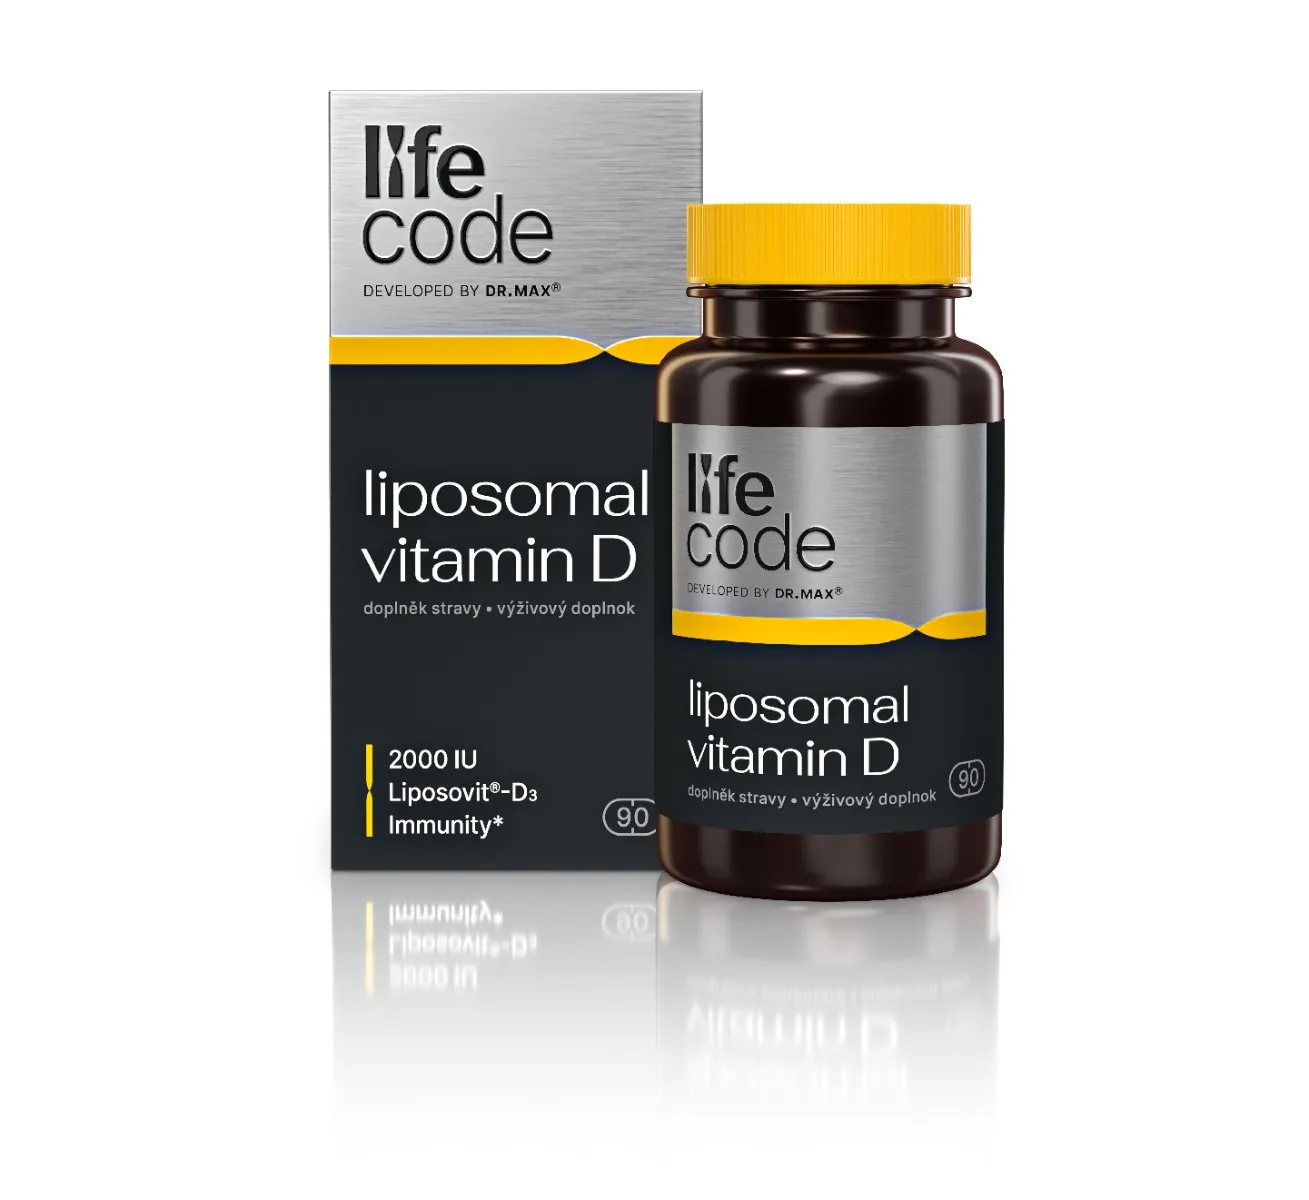 LifeCode developed by Dr. Max® Liposomal Vitamin D 90 kapslí